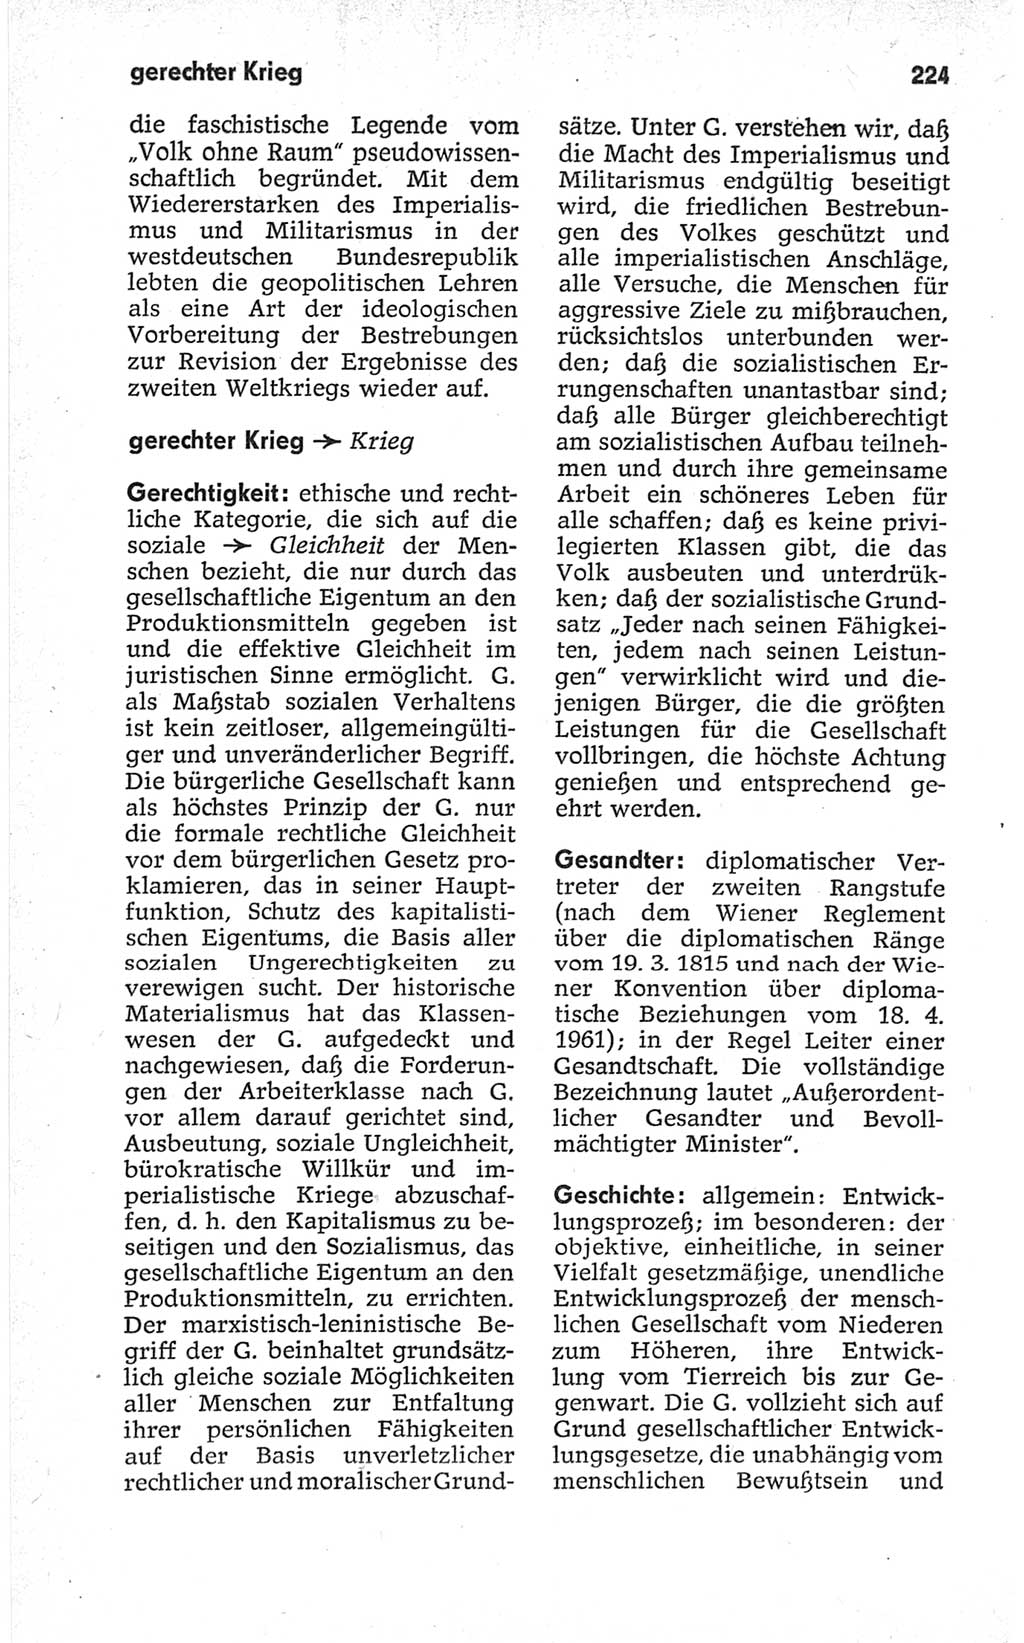 Kleines politisches Wörterbuch [Deutsche Demokratische Republik (DDR)] 1967, Seite 224 (Kl. pol. Wb. DDR 1967, S. 224)